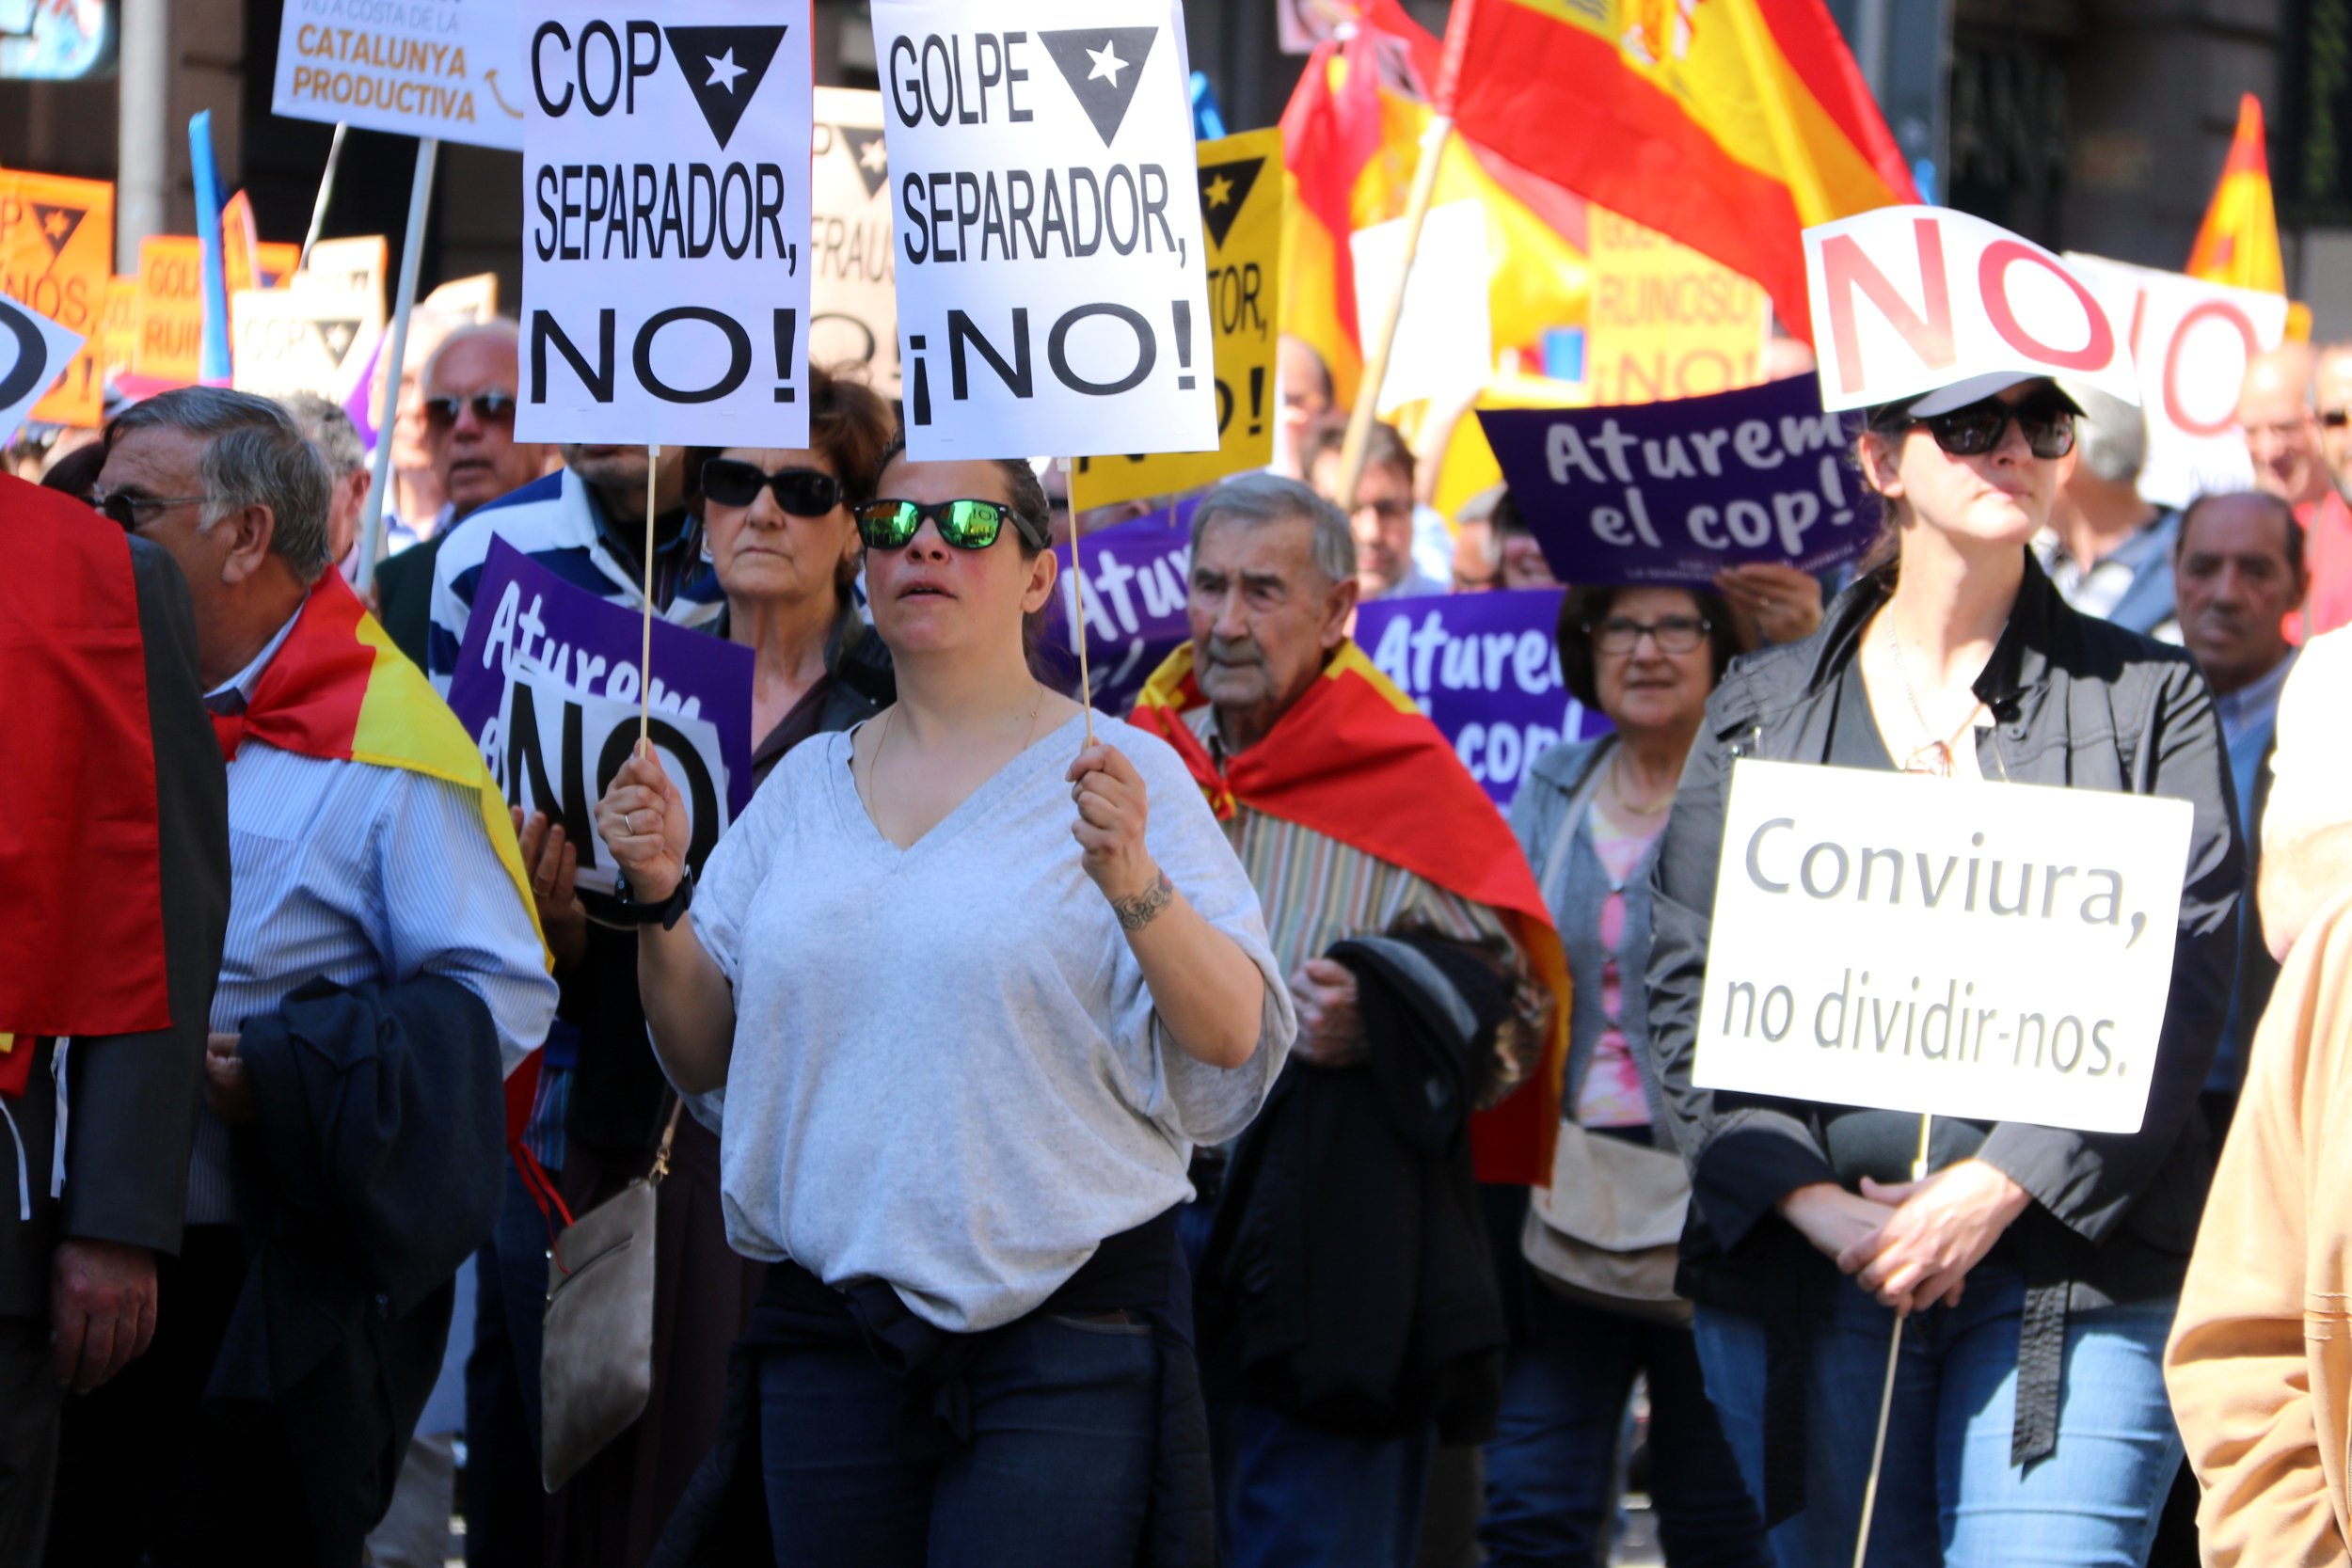 Pancartas en catalán (y con faltas de ortografía) en la manifestación unionista